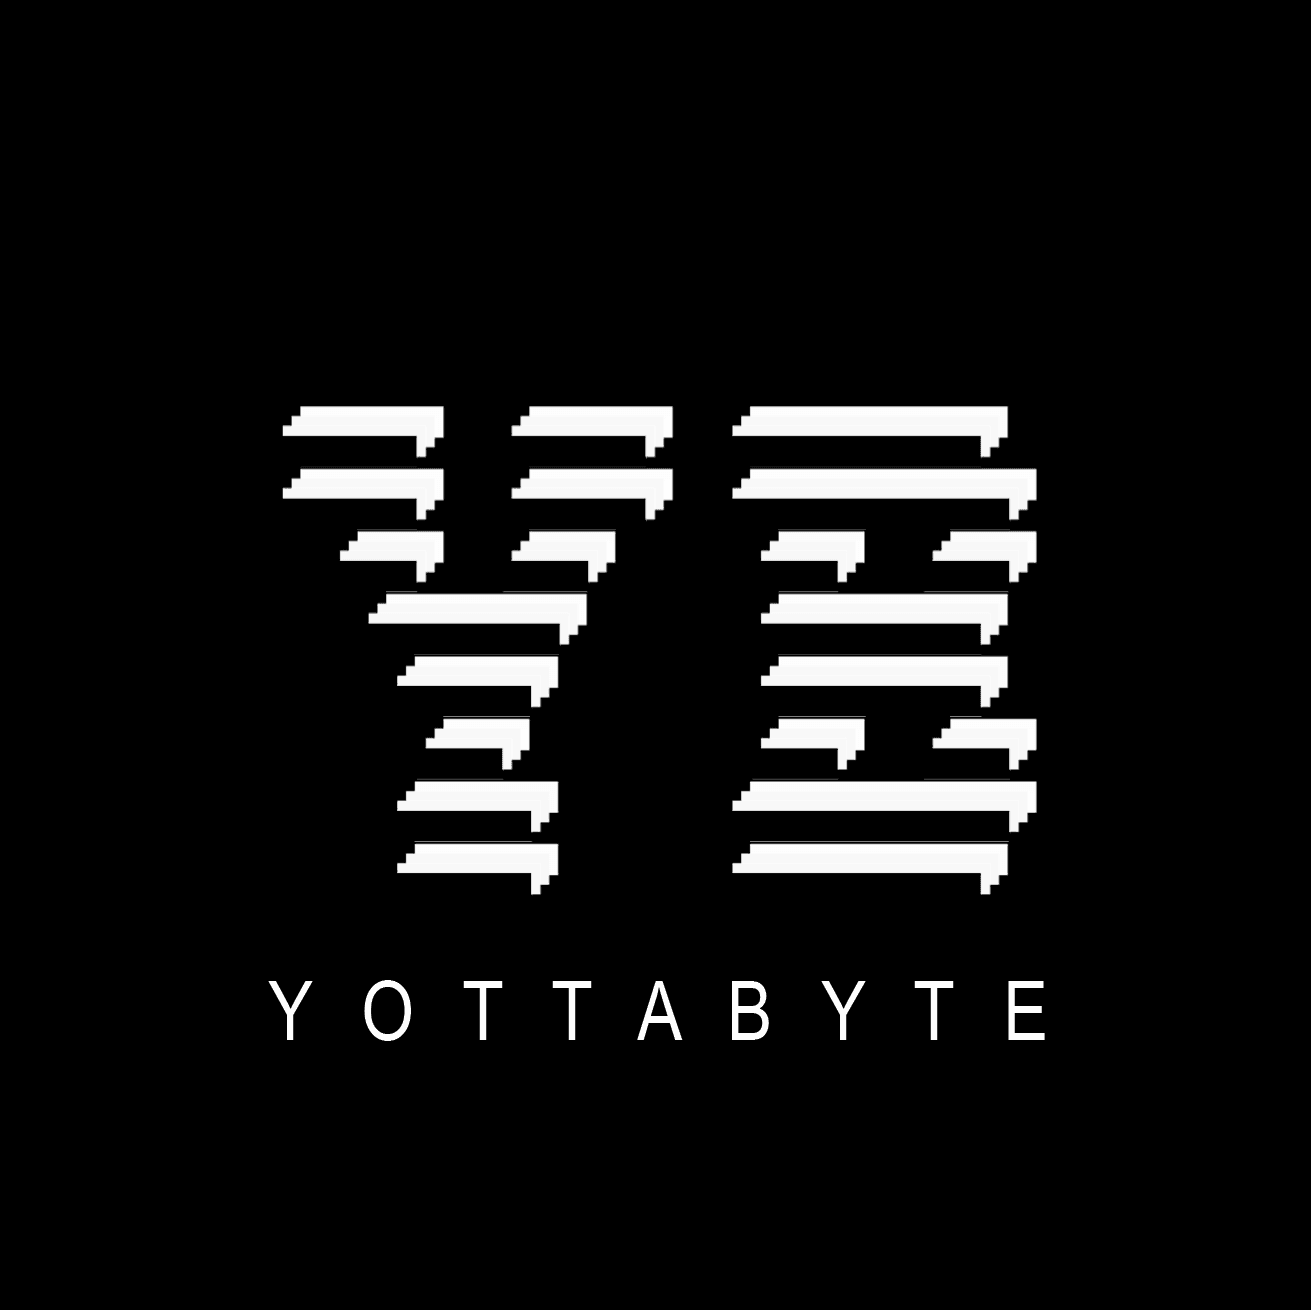 YOTTABYTE